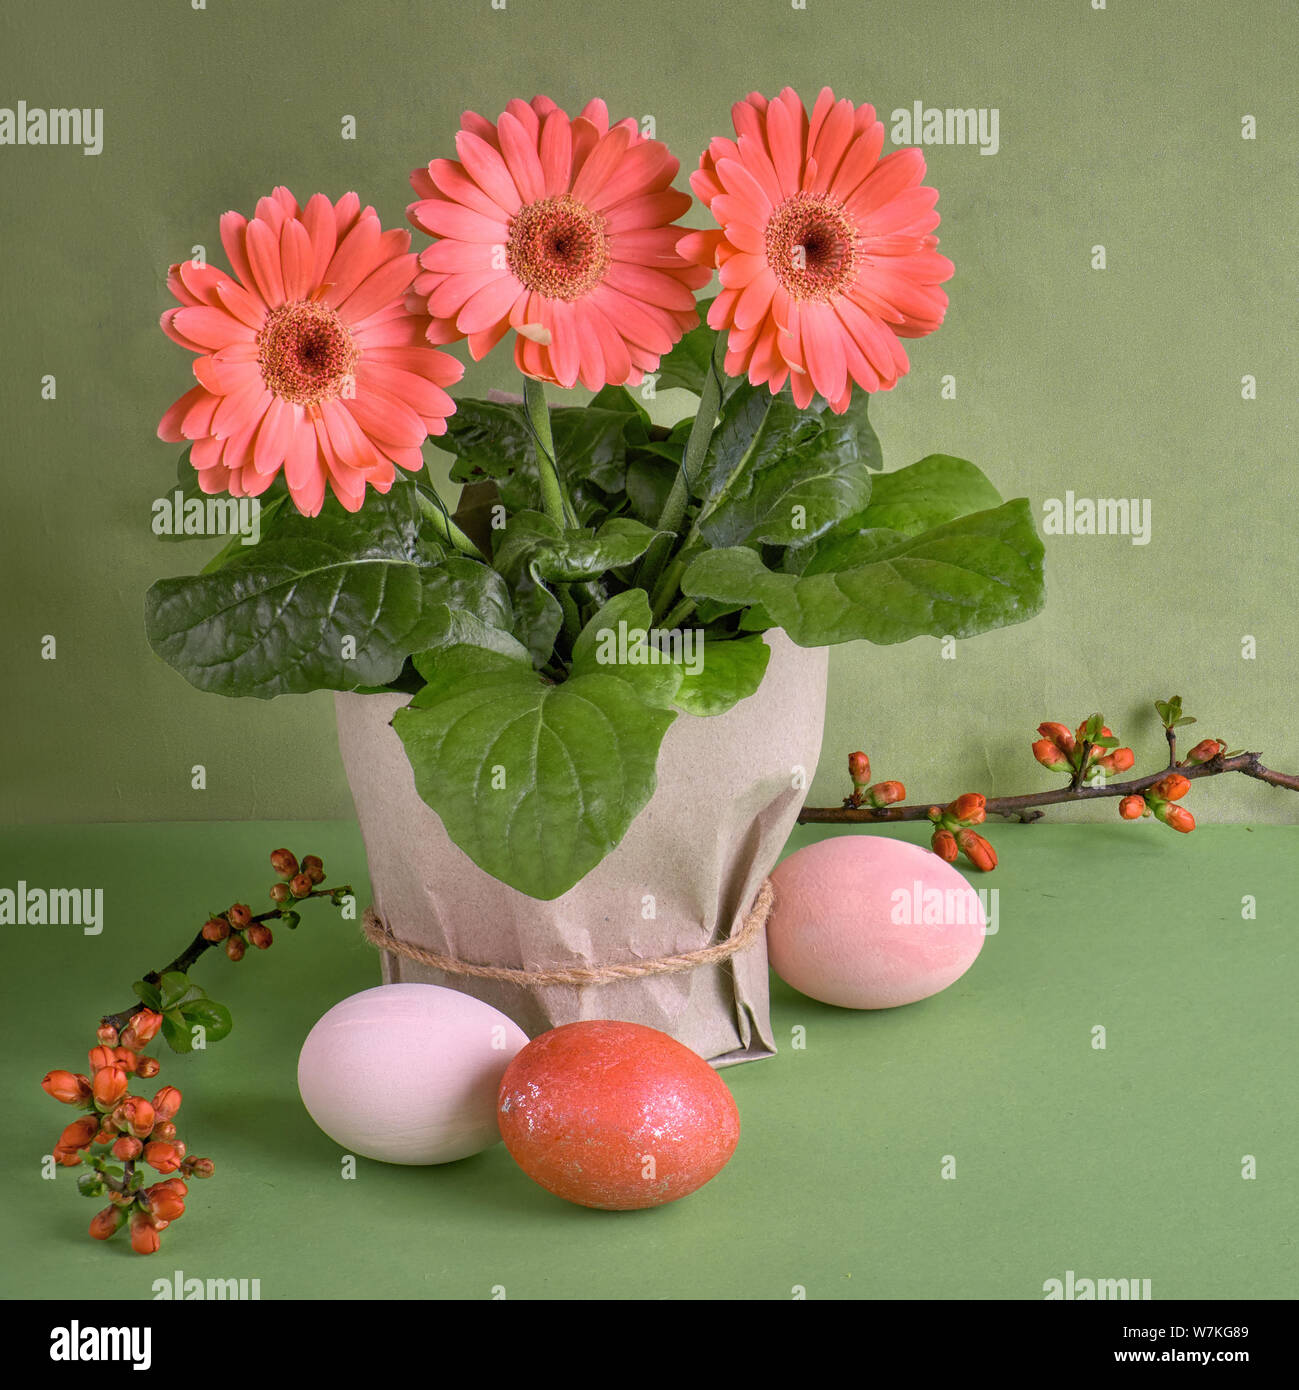 Gerbera fleurs corail daisy et les oeufs de Pâques sur fond de papier vert. Vente de printemps de l'image concept, composition carrée Banque D'Images